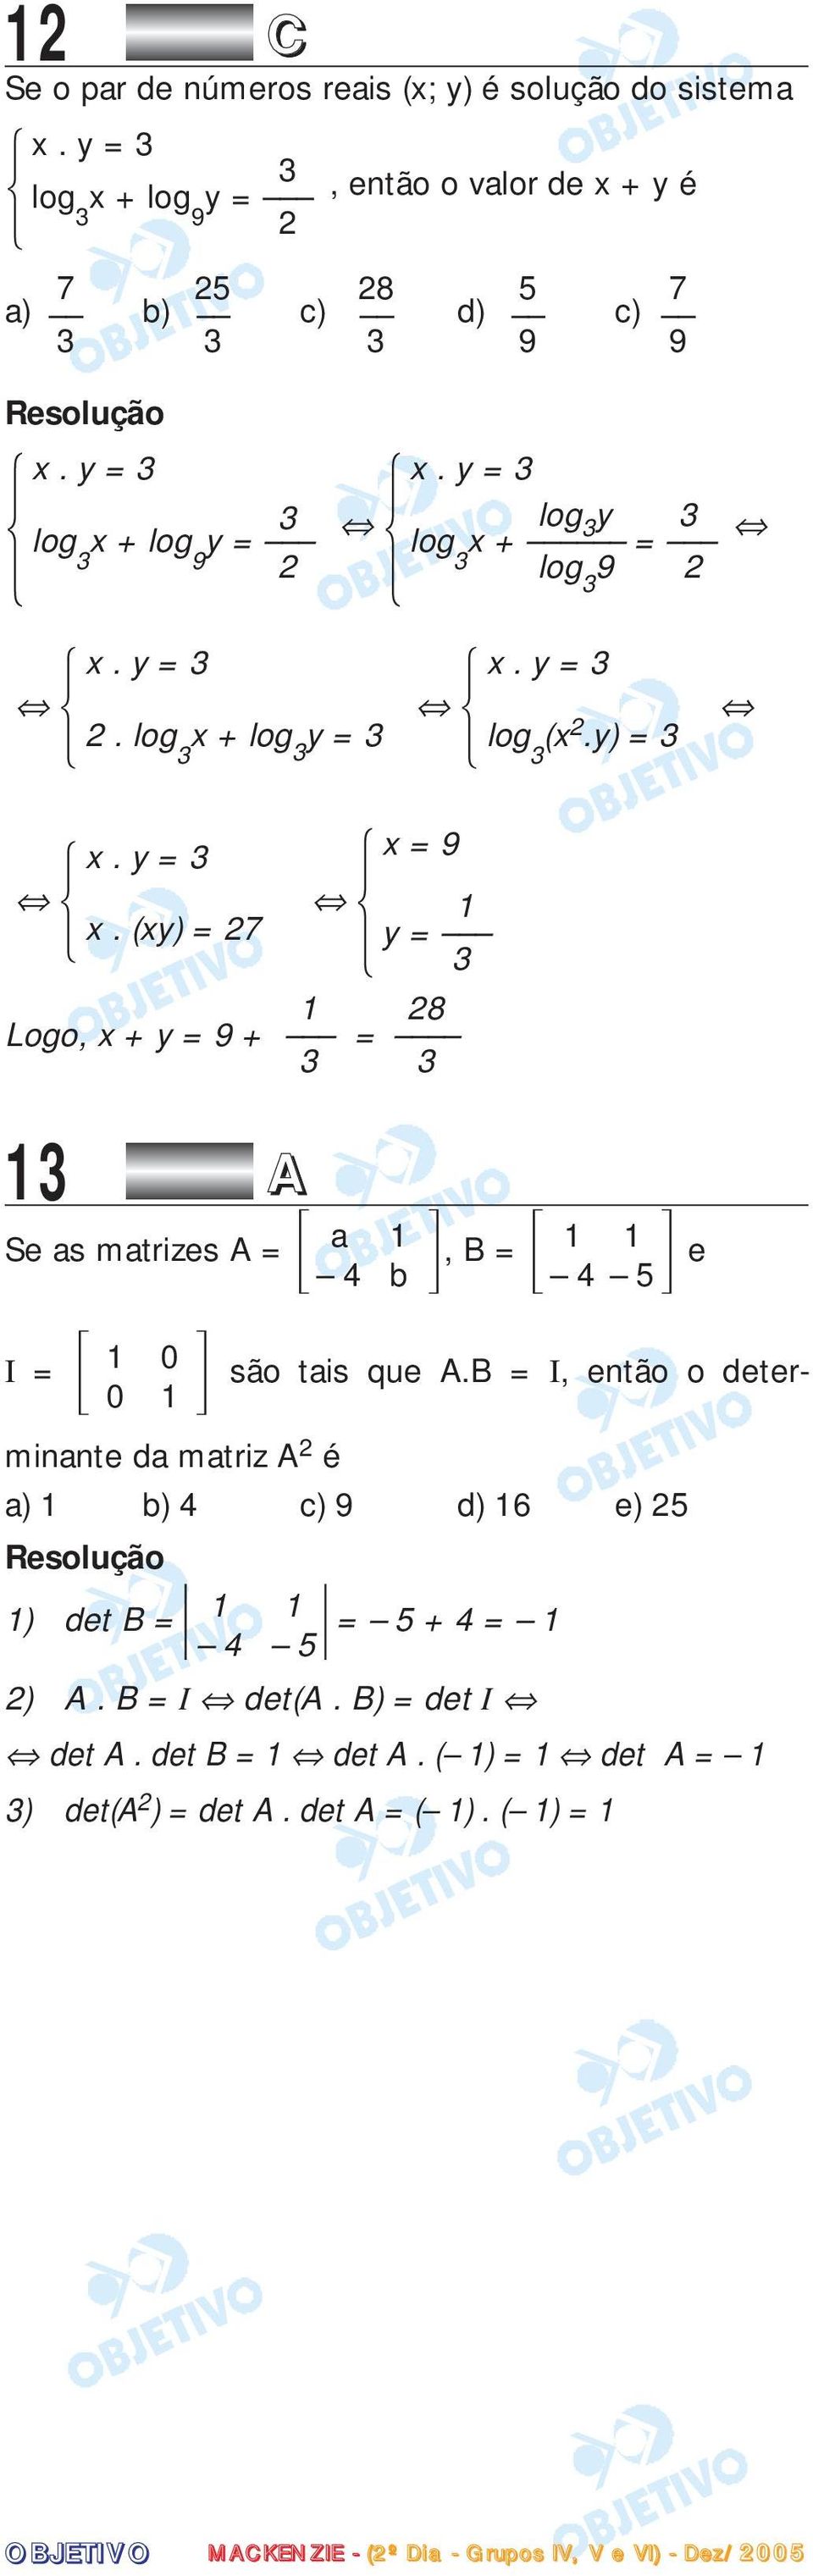 y) = 3 3 3 y = 3 3 13 A 1 28 Logo, x + y = 9 + = 3 3 Se as matrizes A = a 1, B = 1 1 e 4 b 4 5 I = x. y = 3 x. (xy) = 27 1 0 0 1 x = 9 1 y = 3 são tais que A.